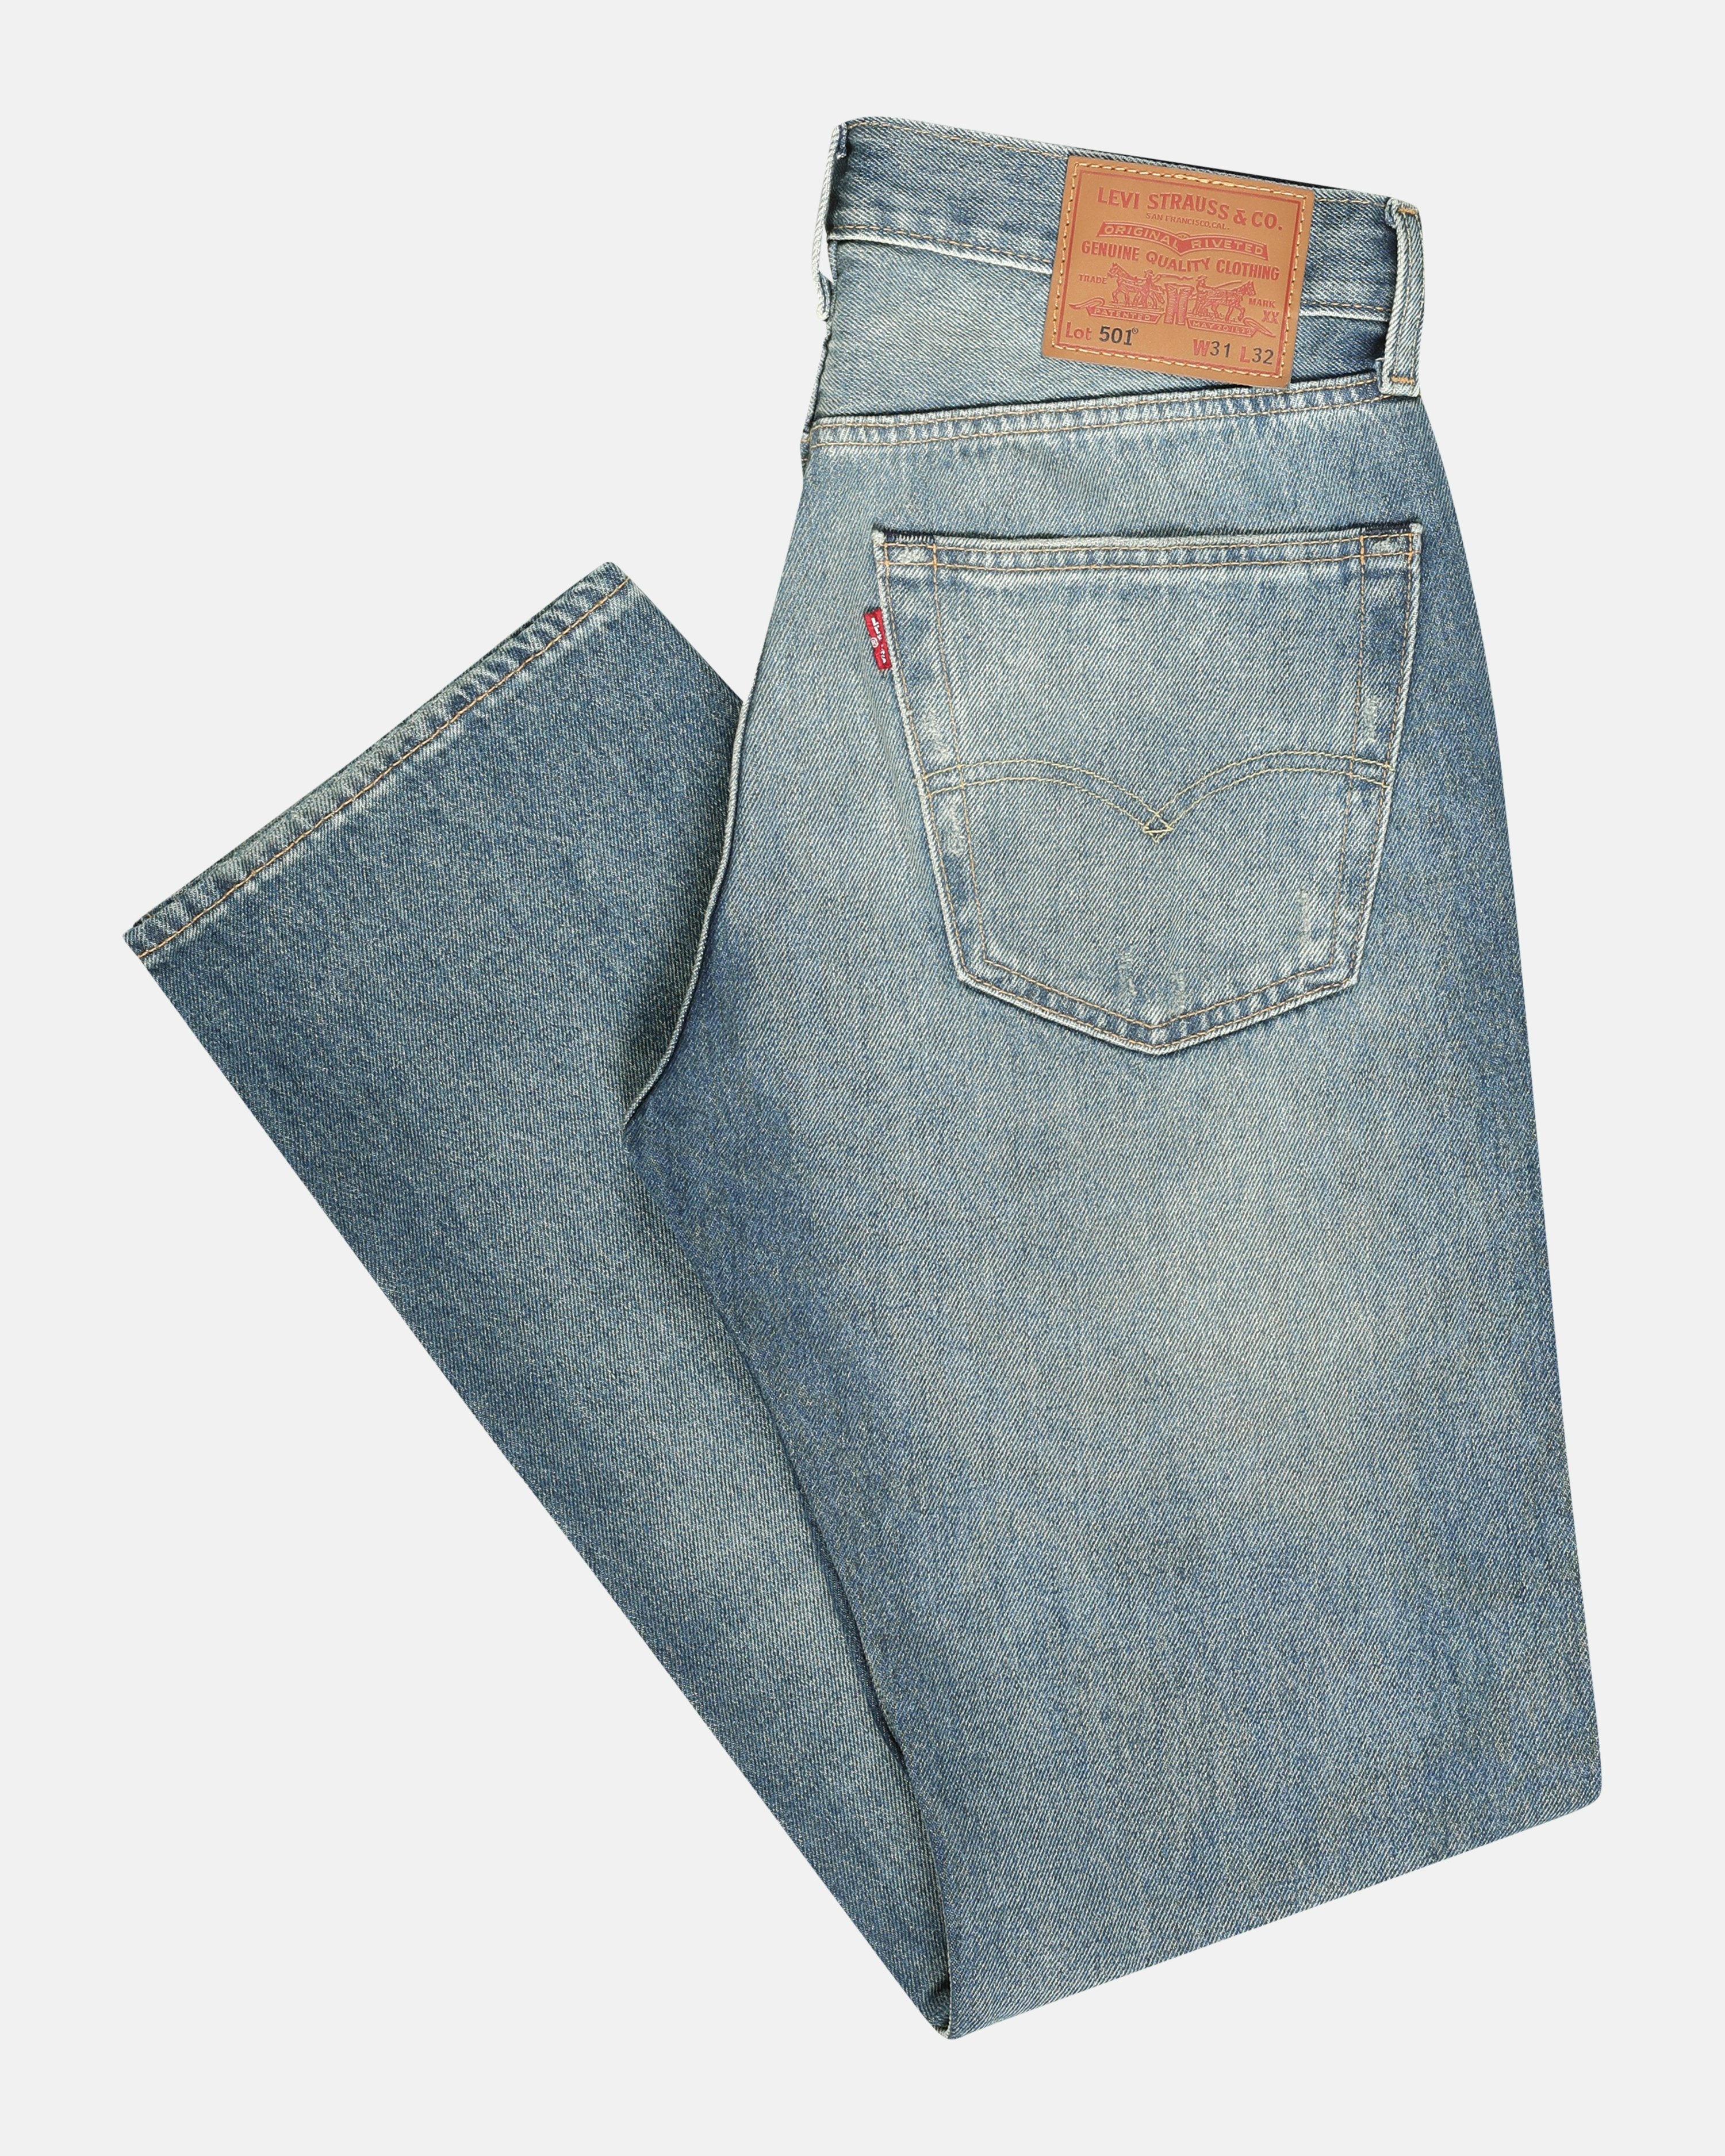 Levi's 501® Original Dark Blue Jeans, Men